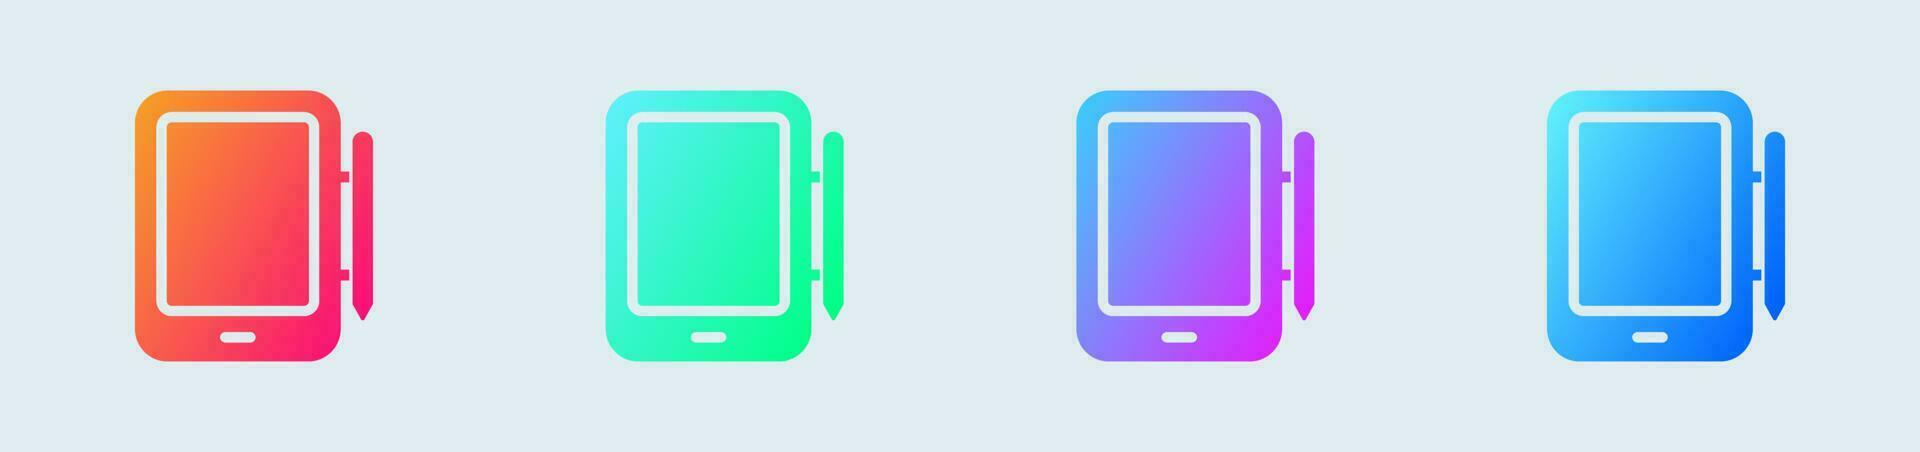 tablette solide icône dans pente couleurs. dispositif panneaux vecteur illustration.